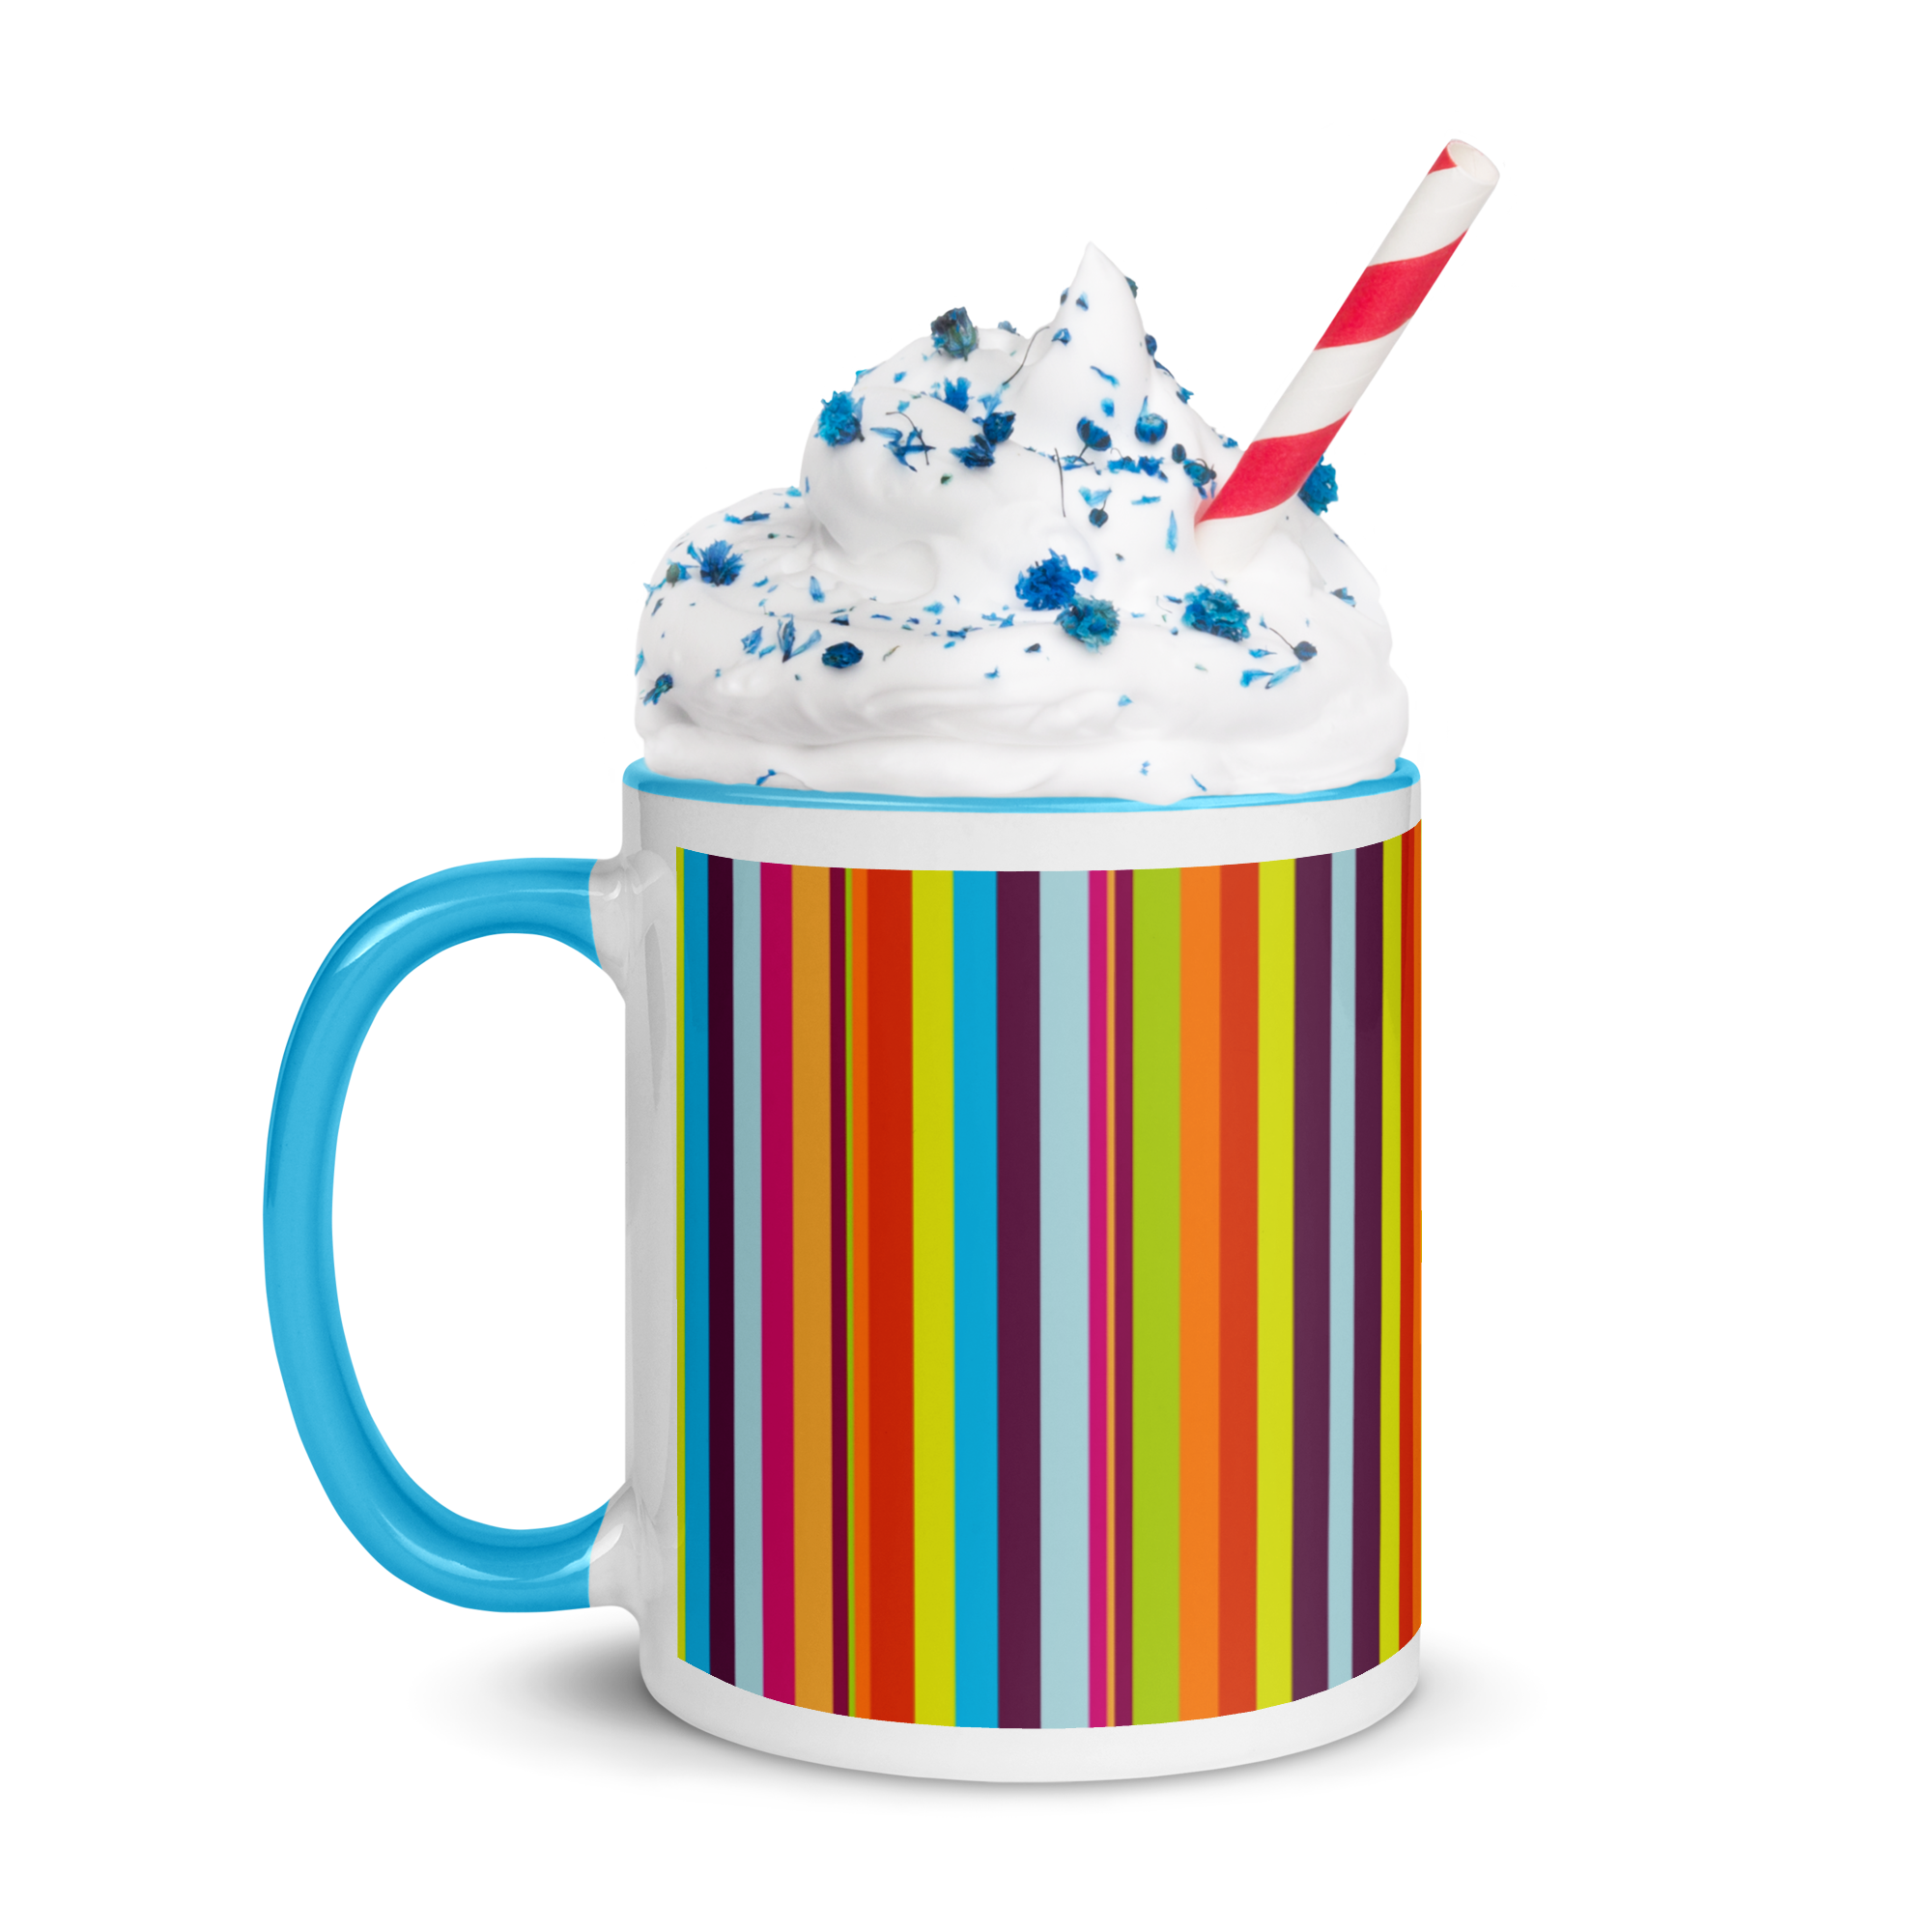 white-ceramic-mug-with-color-inside-blue-11oz-left-63afc2b89e86a.png